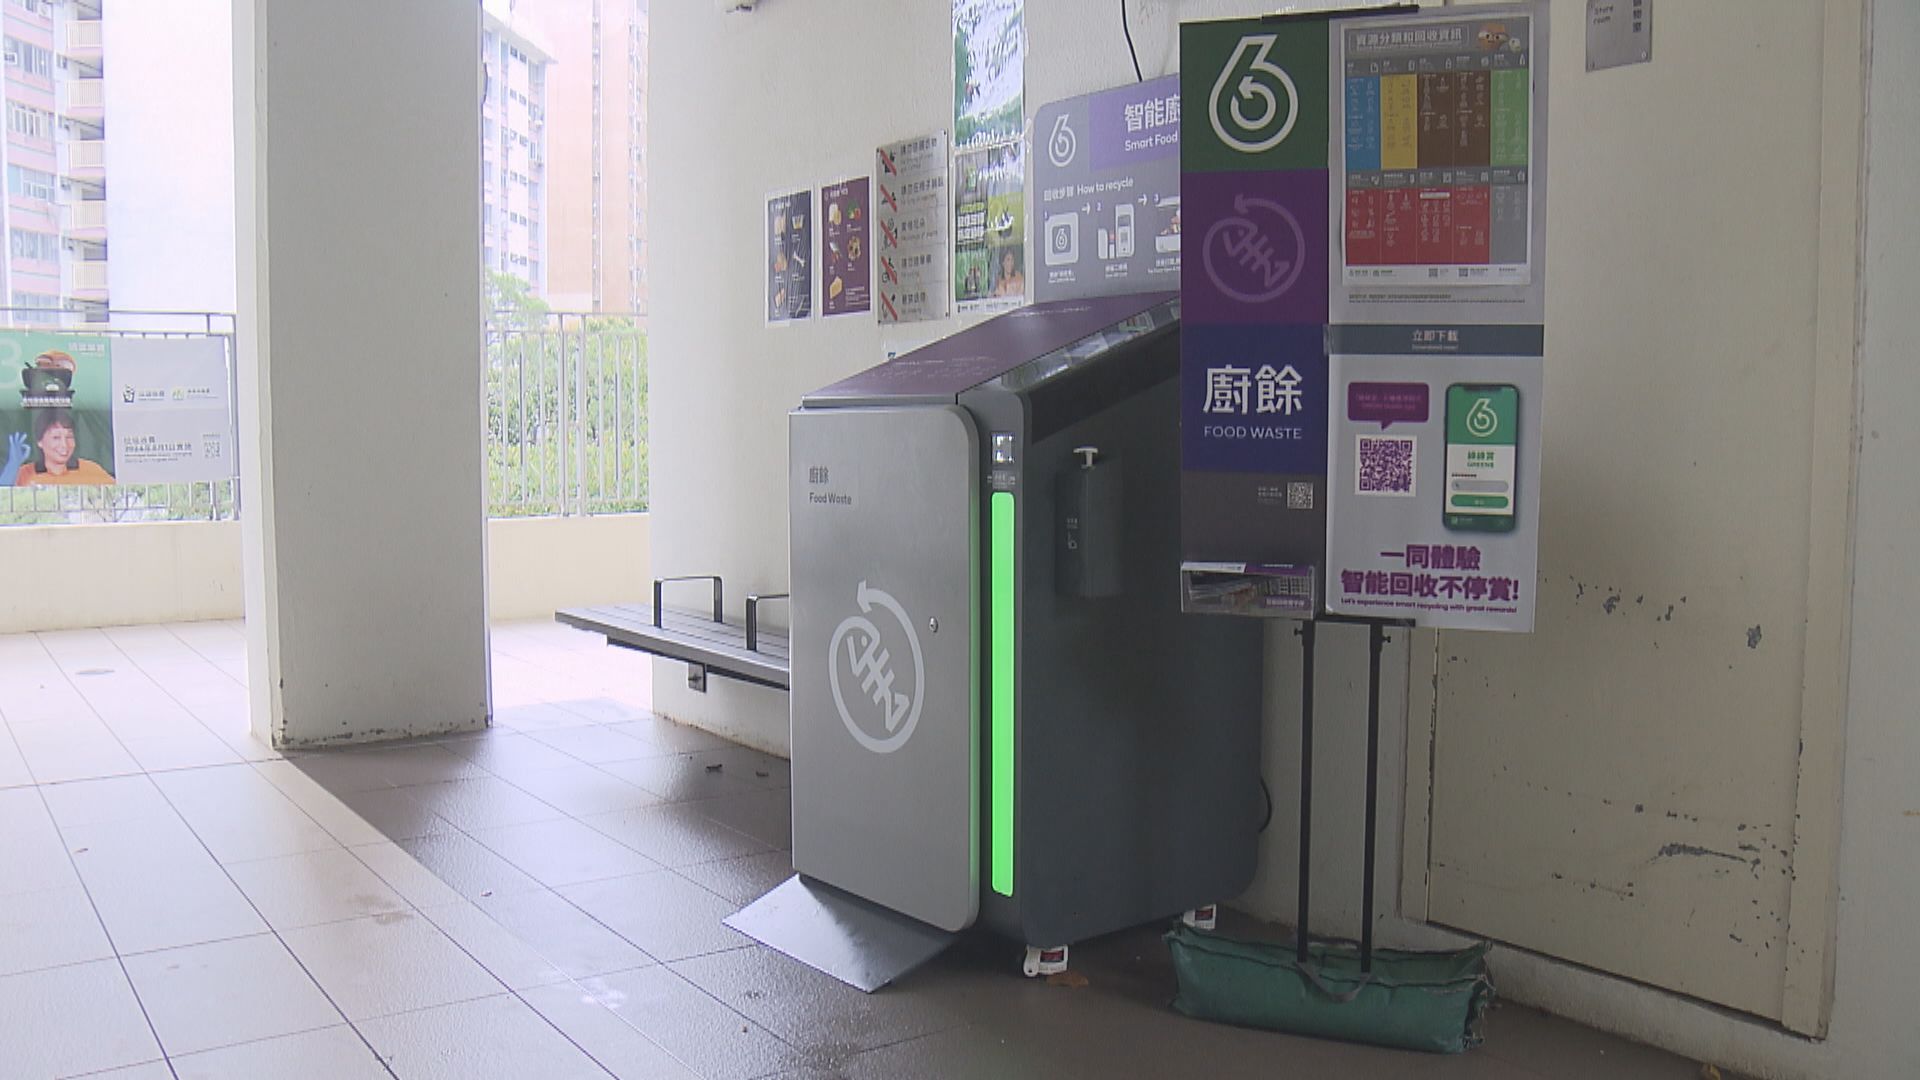 環保署計劃在公共屋邨安裝超過700個智能廚餘回收桶